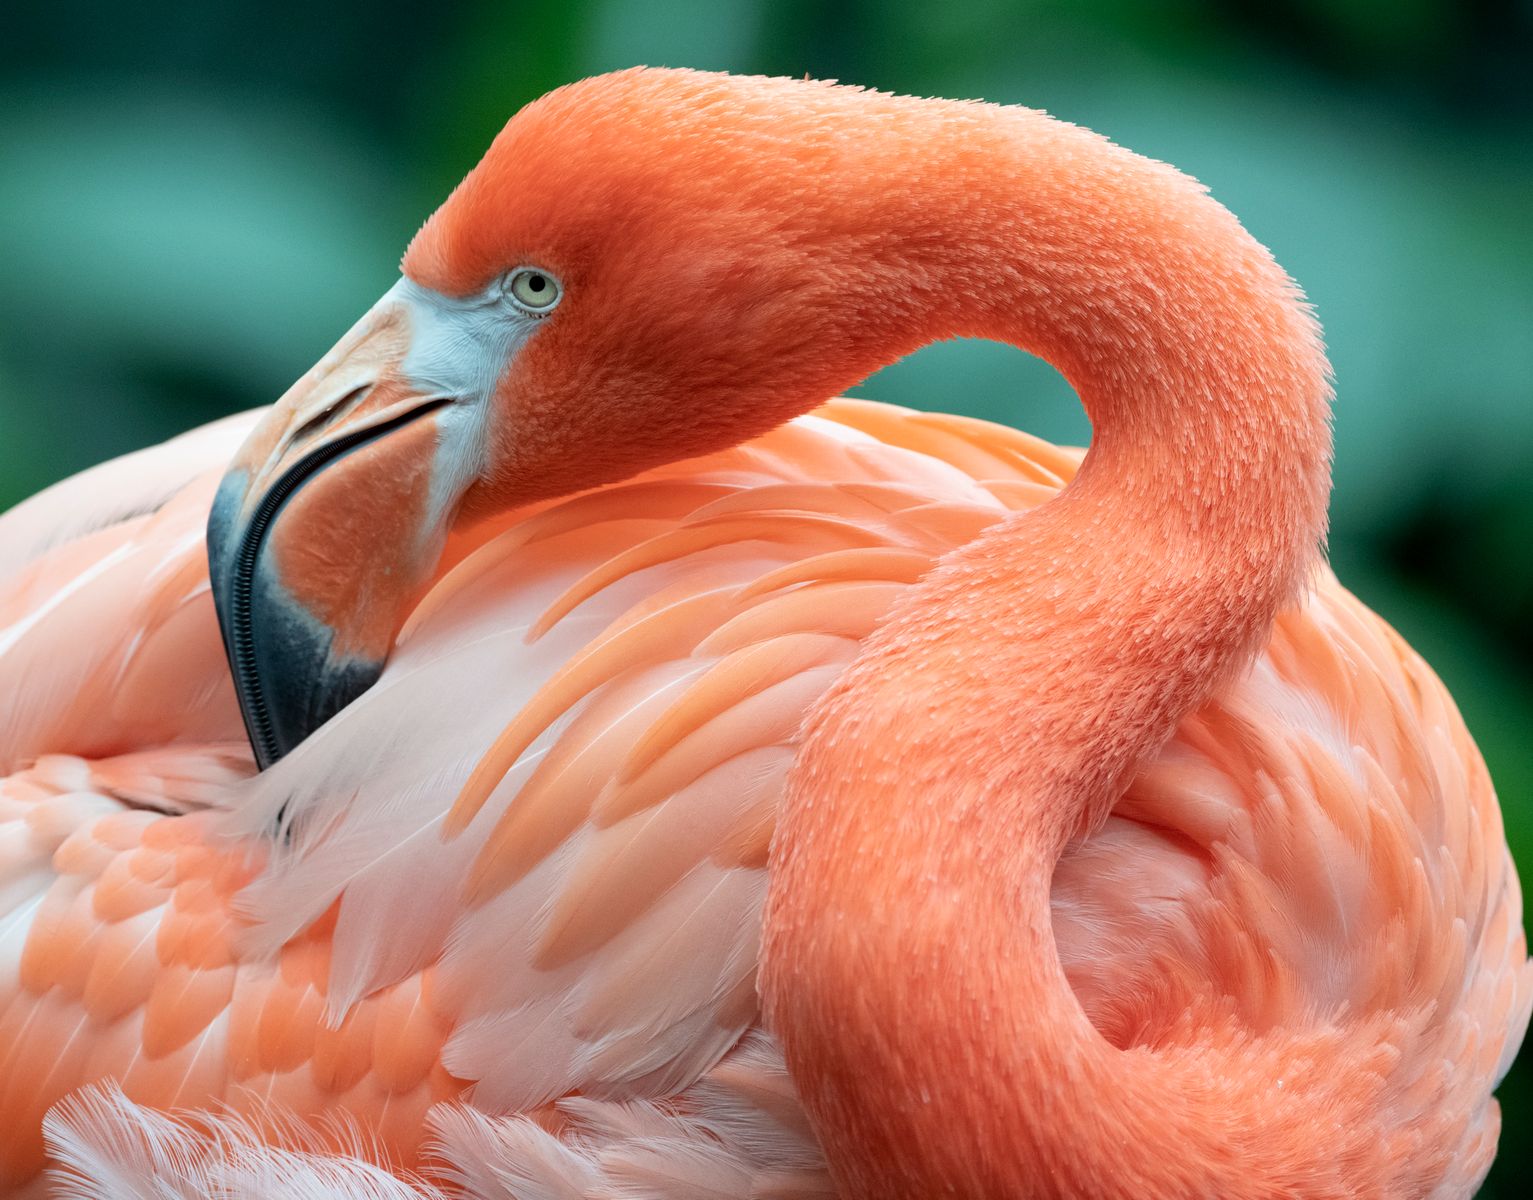 American Flamingo preening itself